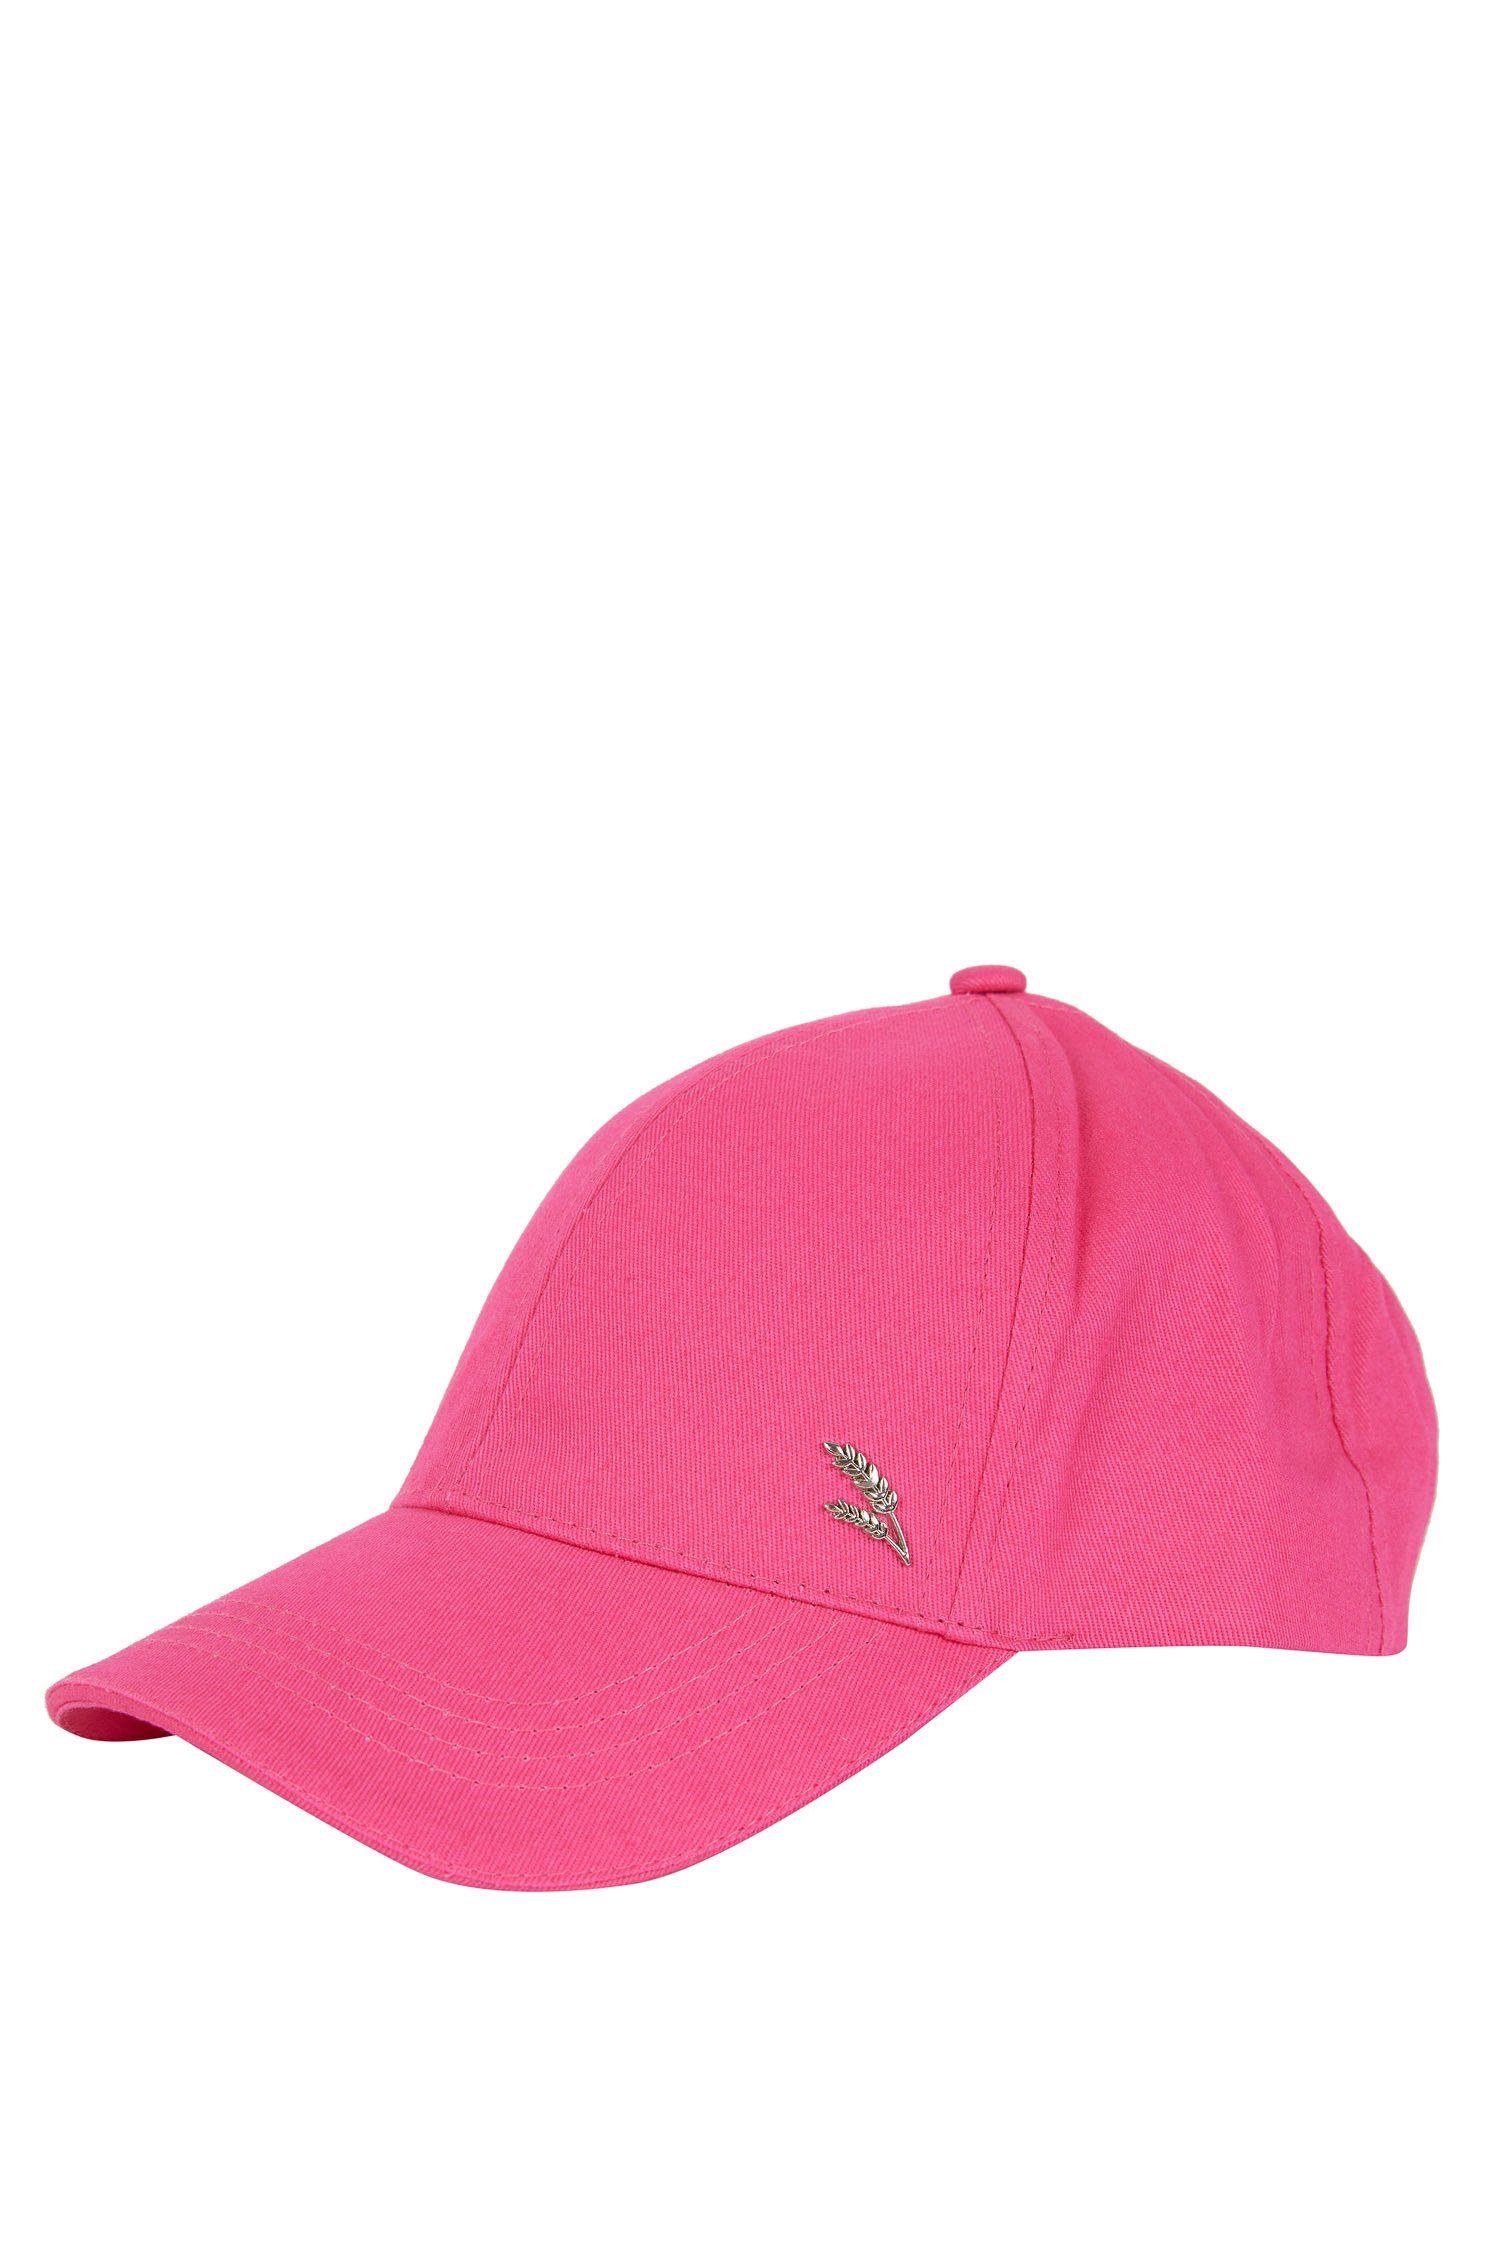 DeFacto Snapback Cap Damen Cap Neon Pink